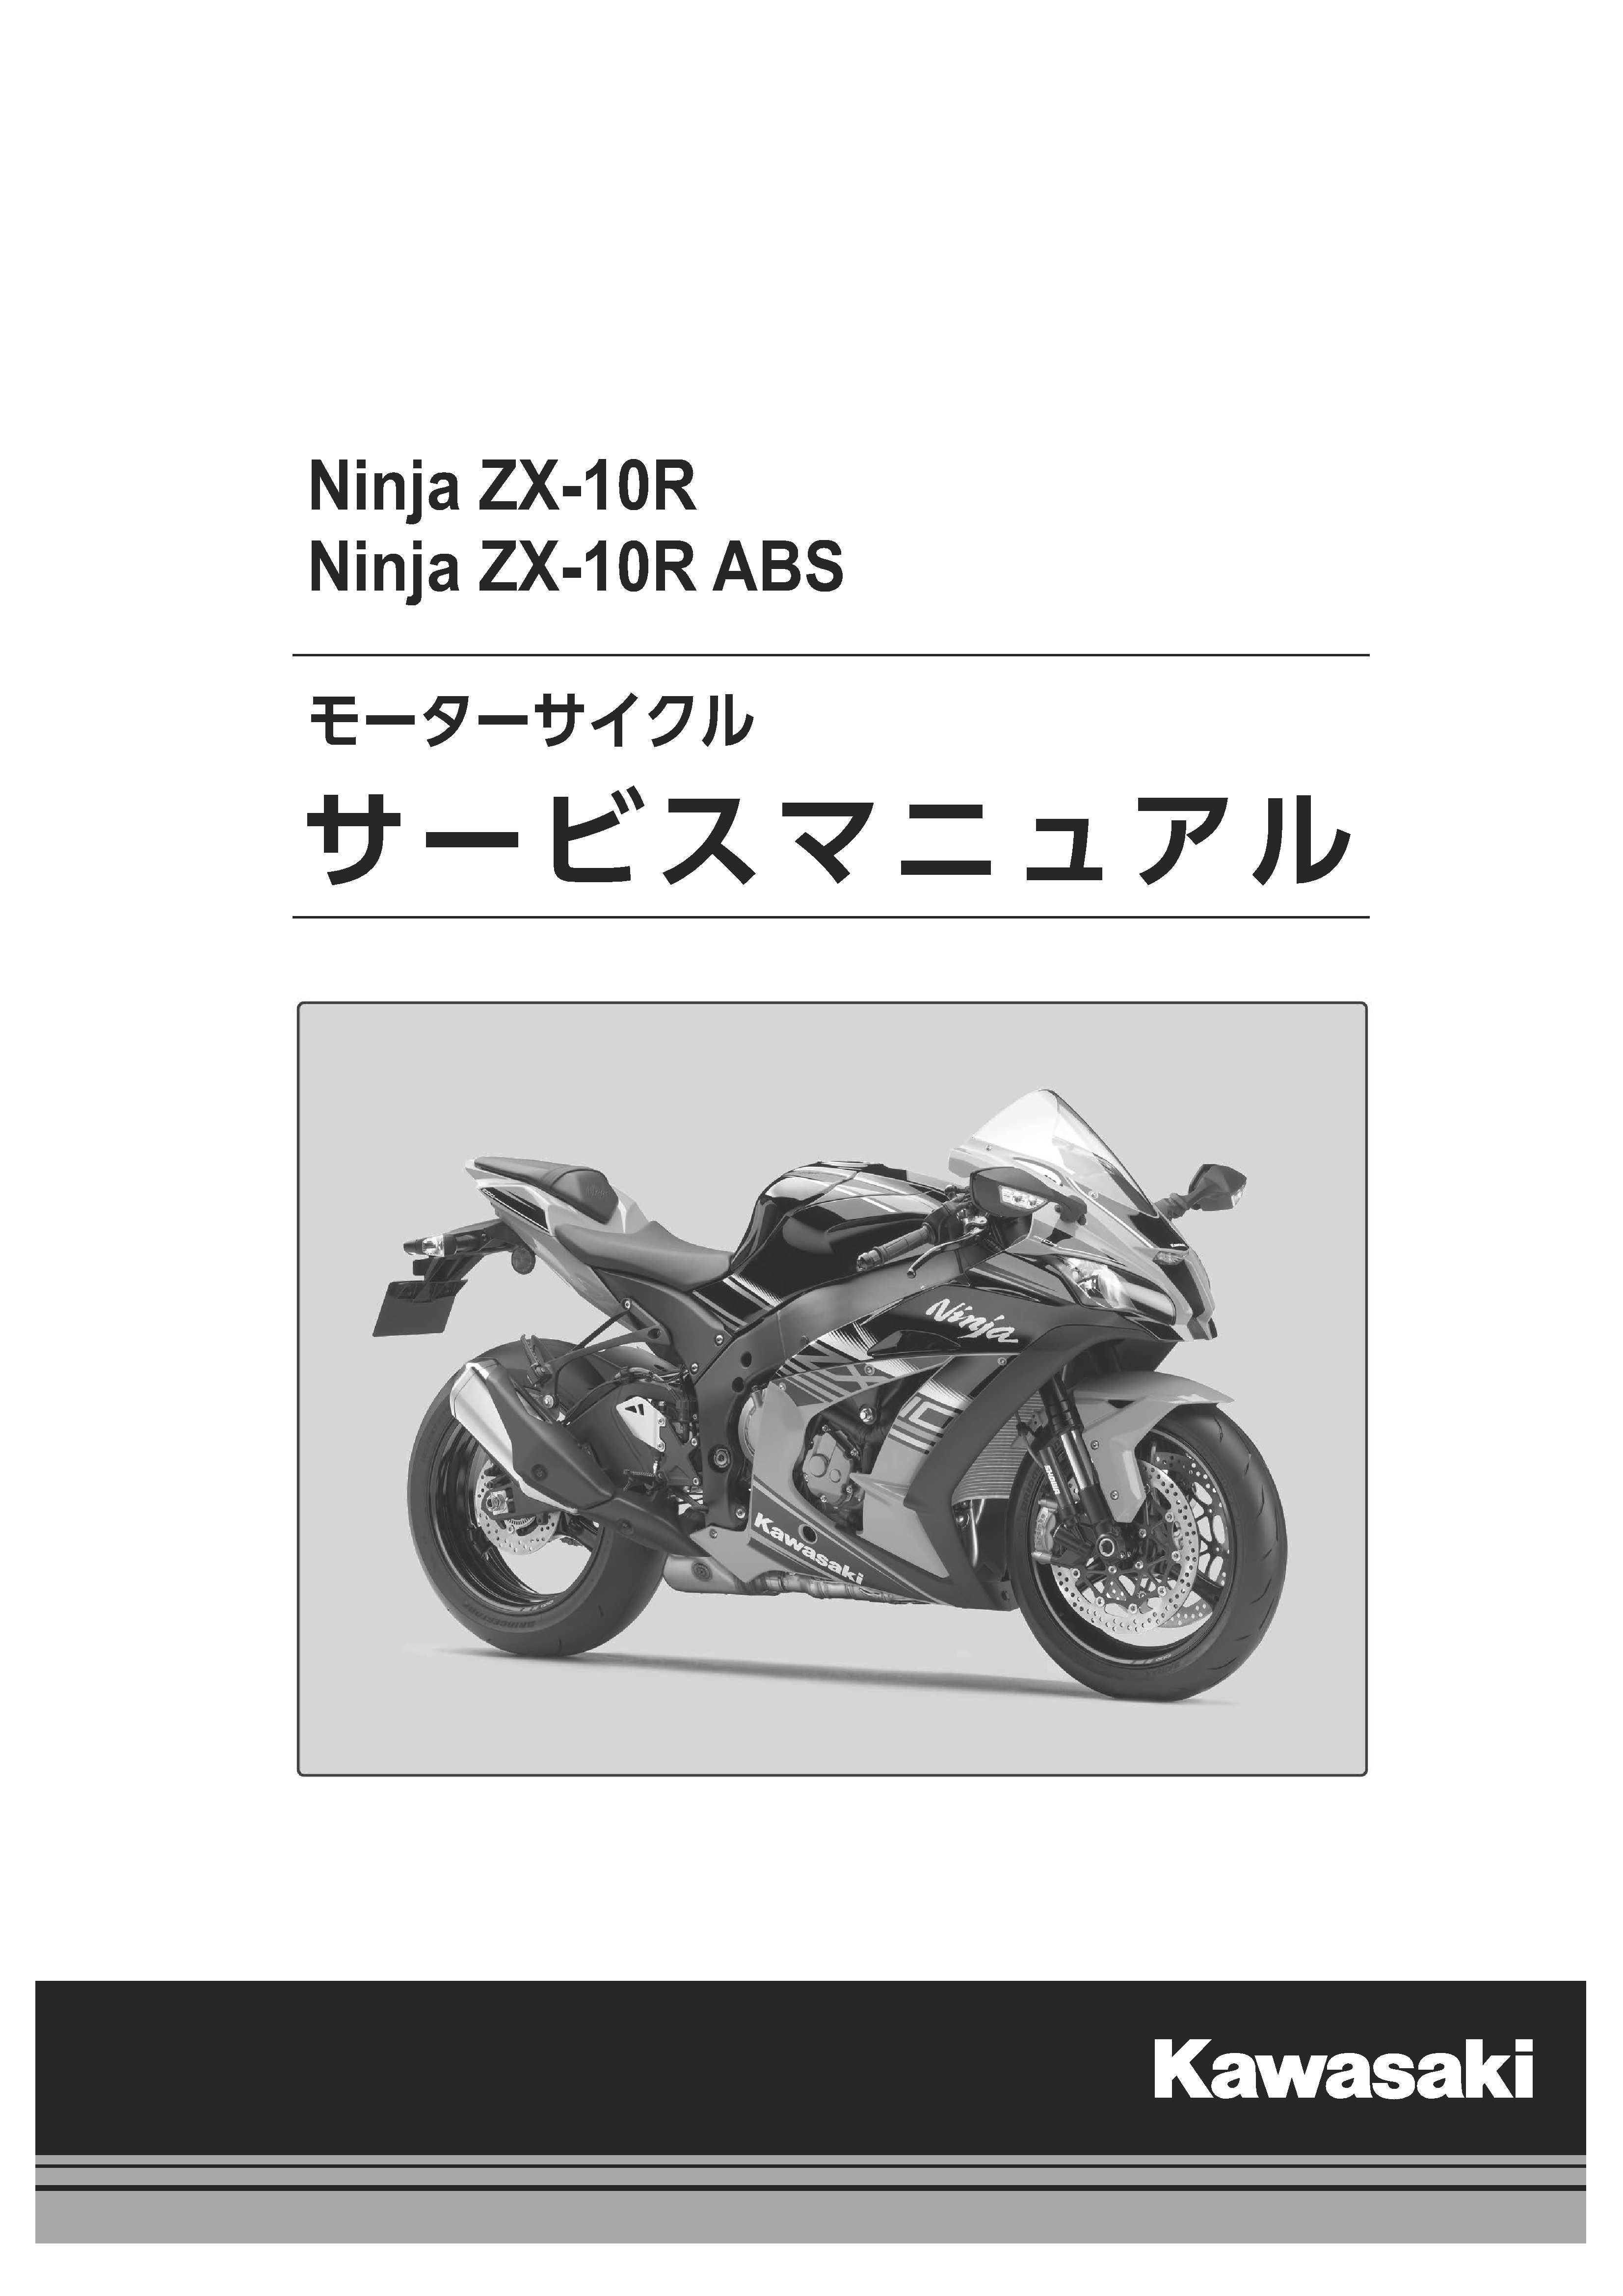 カワサキパーツ/ウエア＆グッズオンラインショップNINJA ZX-10R/ABS 16 